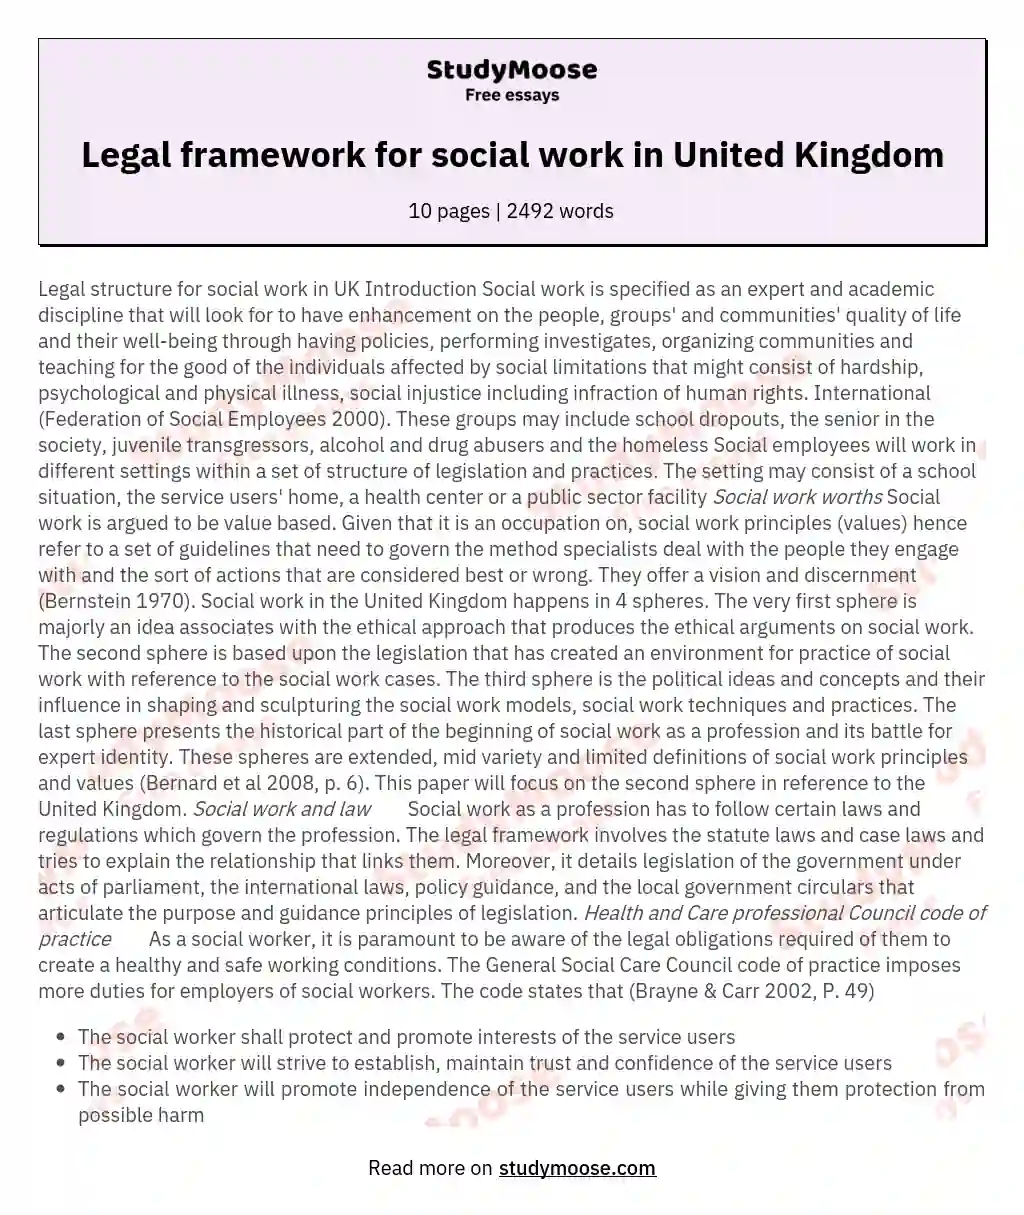 Legal framework for social work in United Kingdom essay